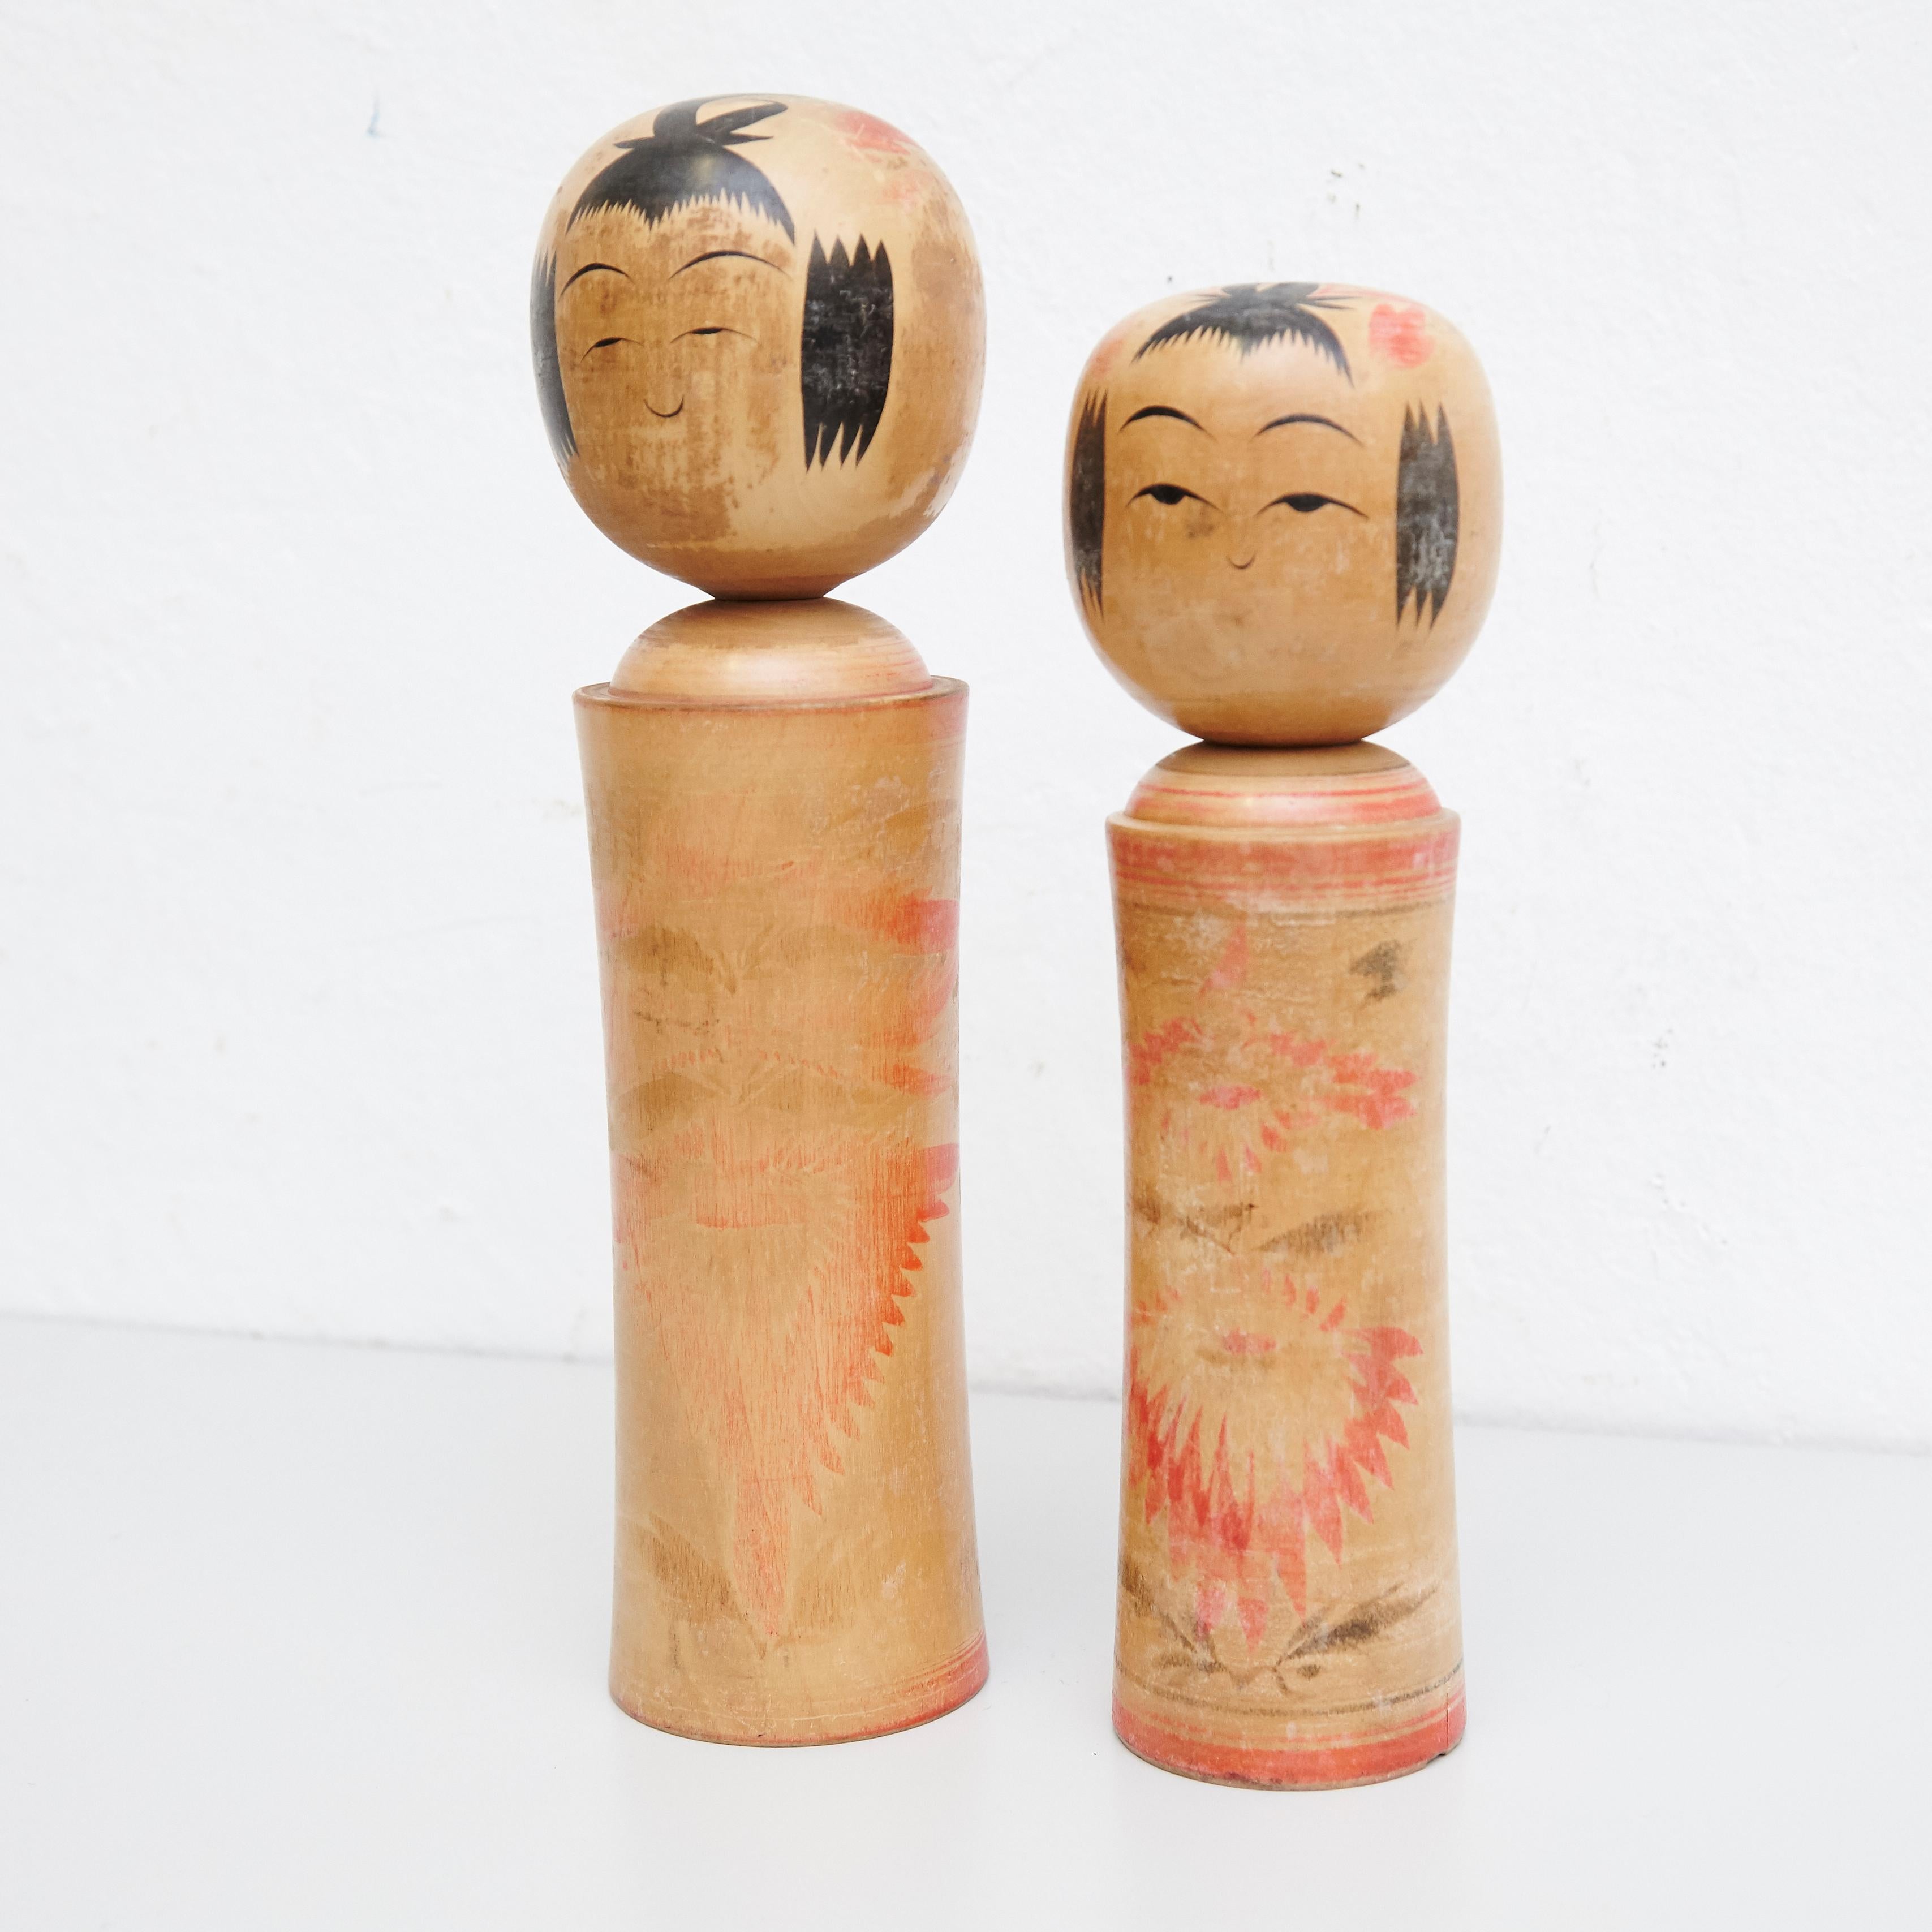 Japanische Puppen, Kokeshi genannt, aus dem frühen 20. Jahrhundert.
Provenienz aus dem nördlichen Japan.
Satz von 2.

Maßnahmen: 

31 x 8 cm
28 x 7 cm


Handgefertigt von japanischen Kunsthandwerkern aus Holz. Sie haben einen einfachen